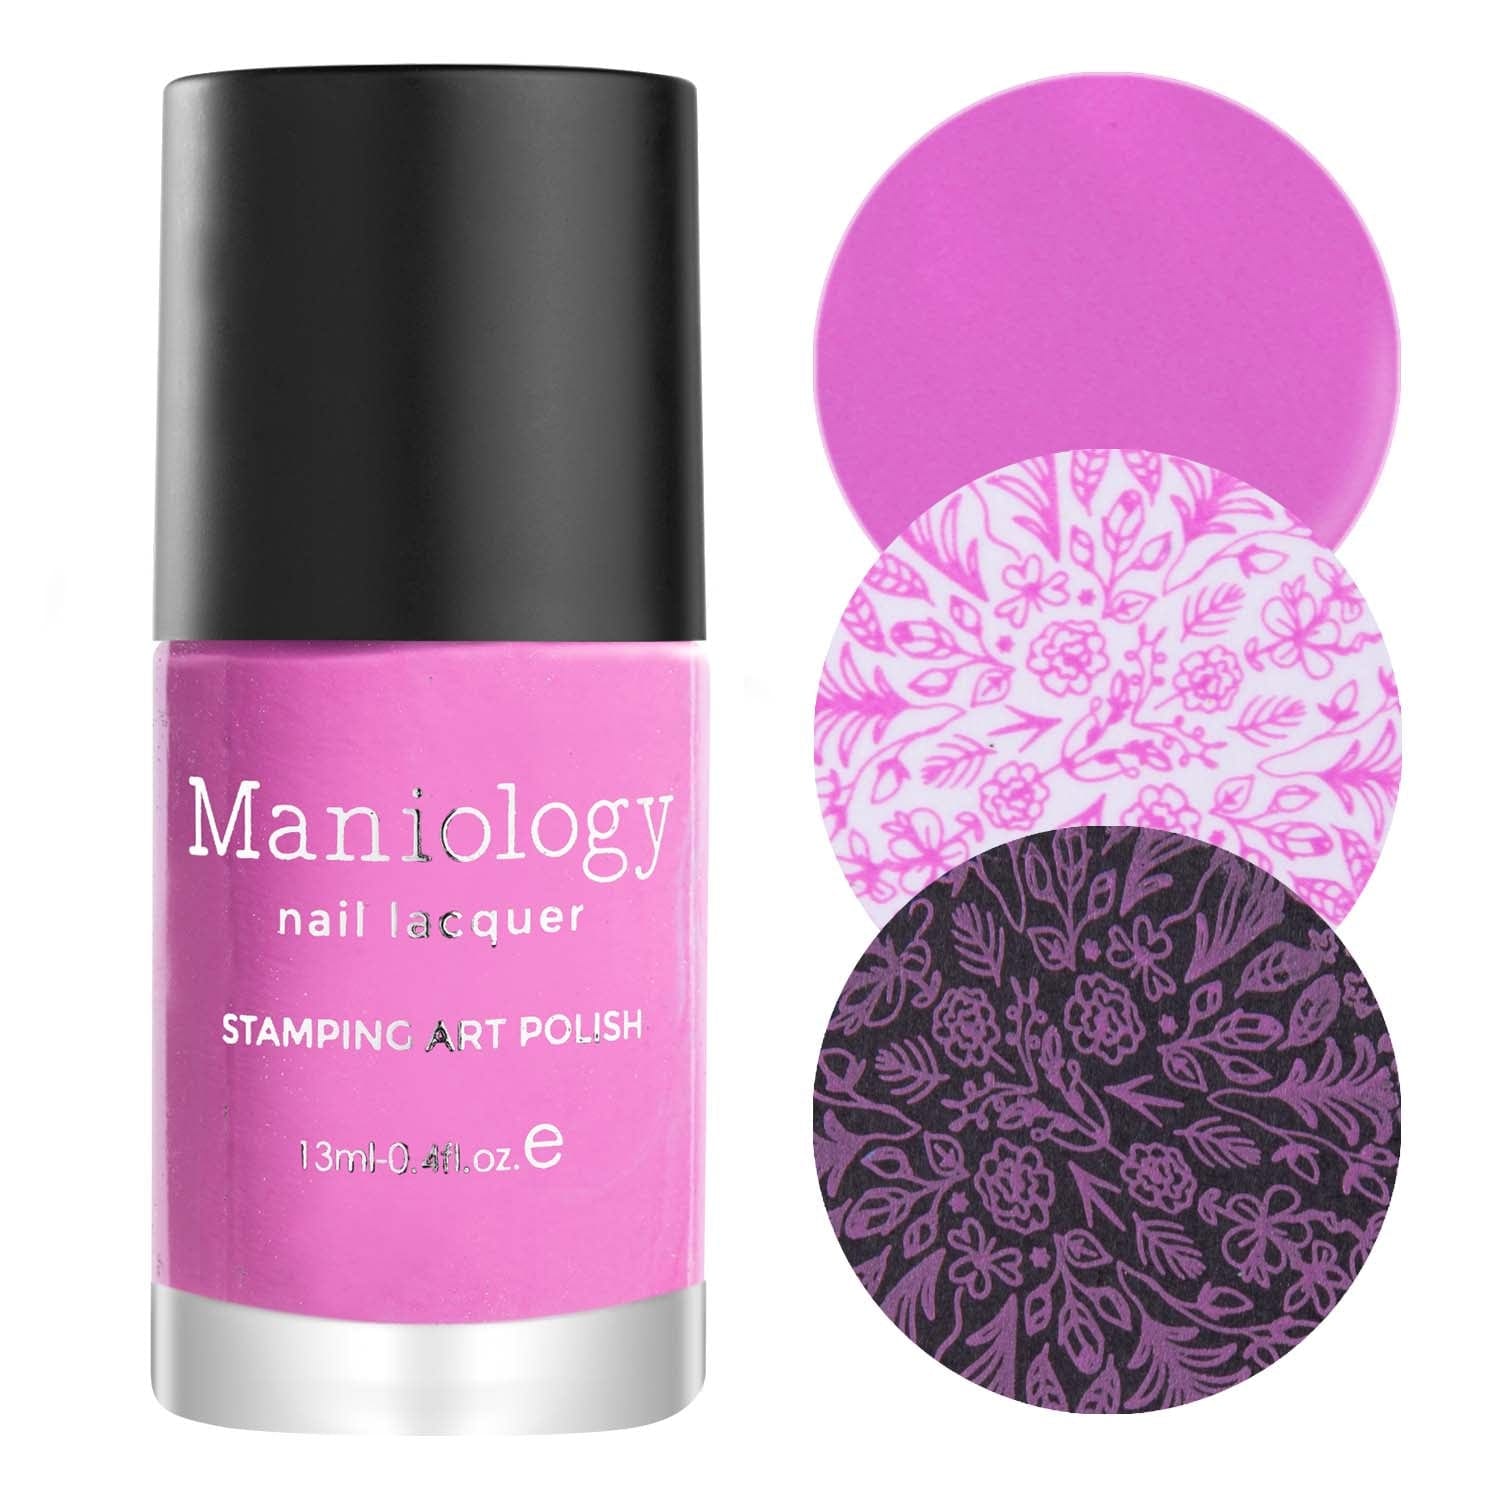 Primerose Cream Rose Pink Stamping Polish | Maniology